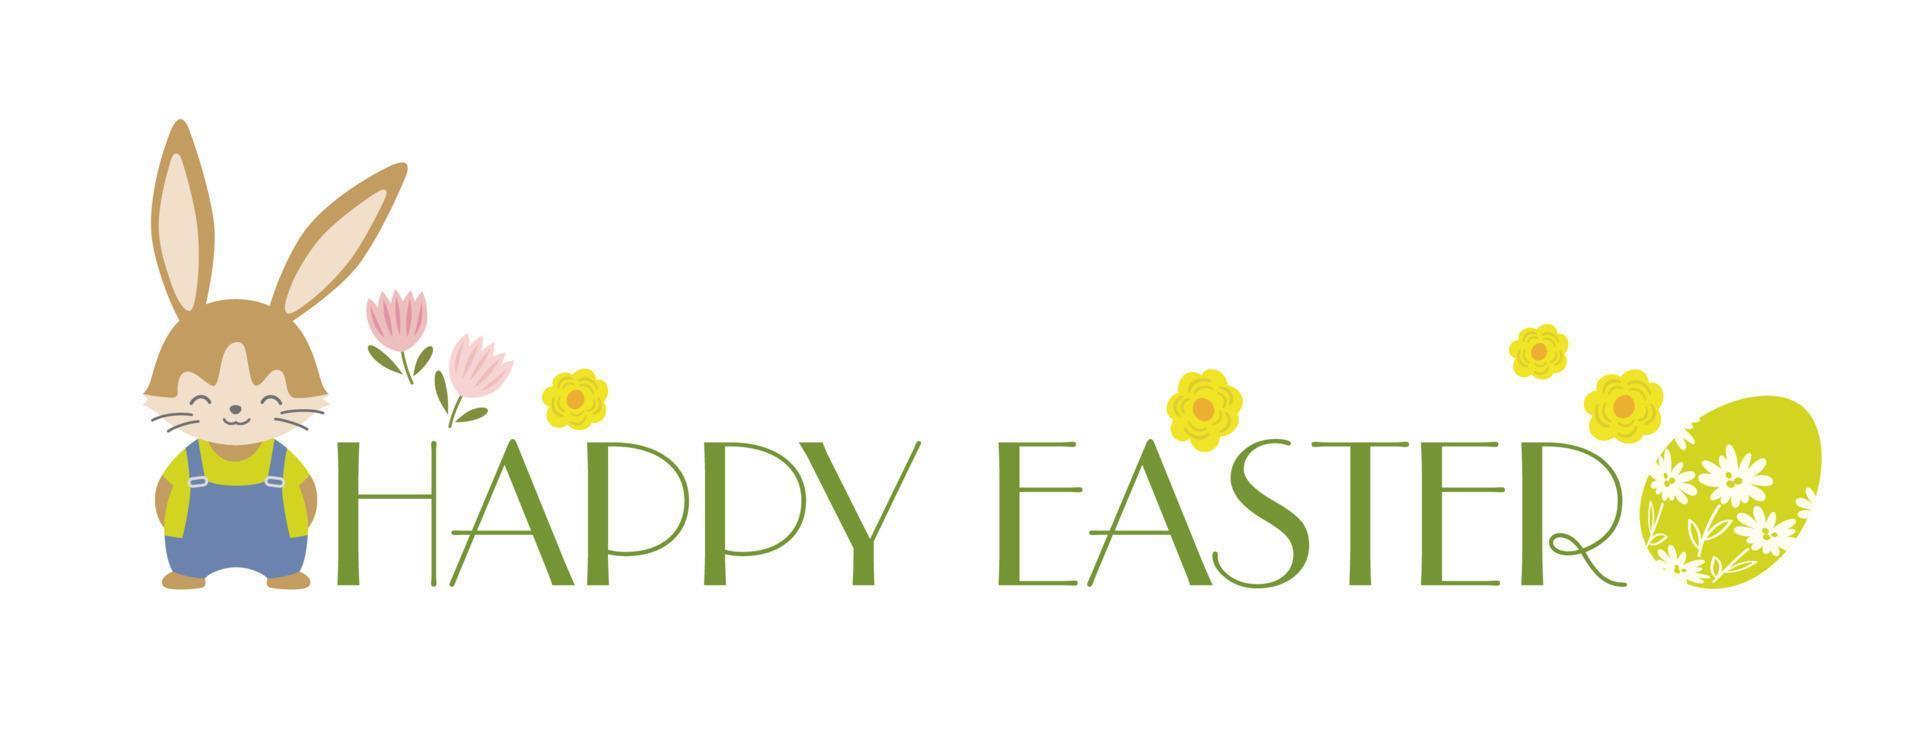 logotipo de símbolo colorido vectorial de pascua feliz con un conejito de pascua caricaturesco y un huevo aislado en un fondo blanco. vector